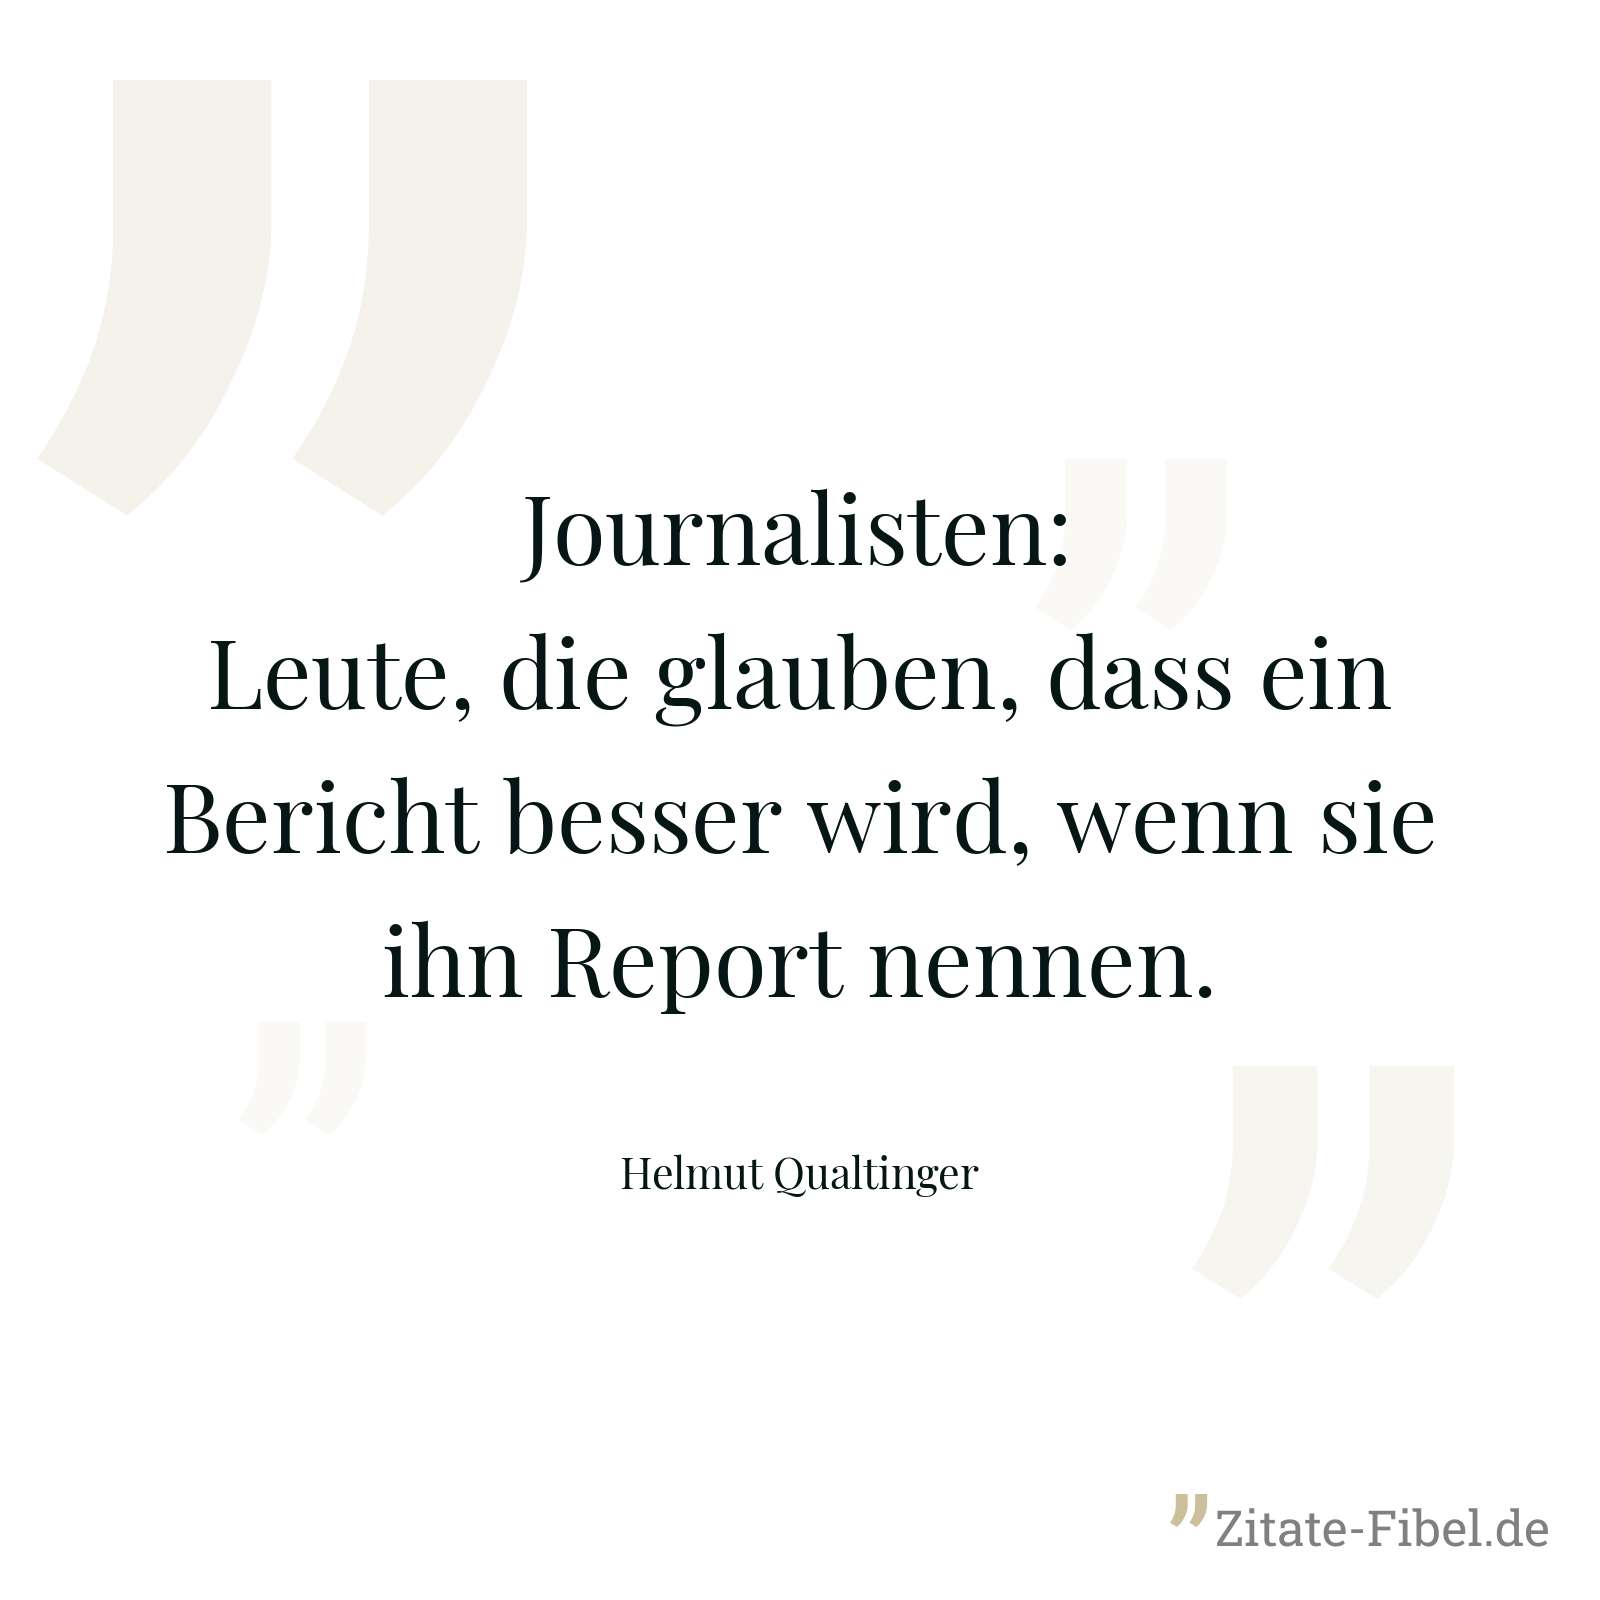 Journalisten: Leute, die glauben, dass ein Bericht besser wird, wenn sie ihn Report nennen. - Helmut Qualtinger